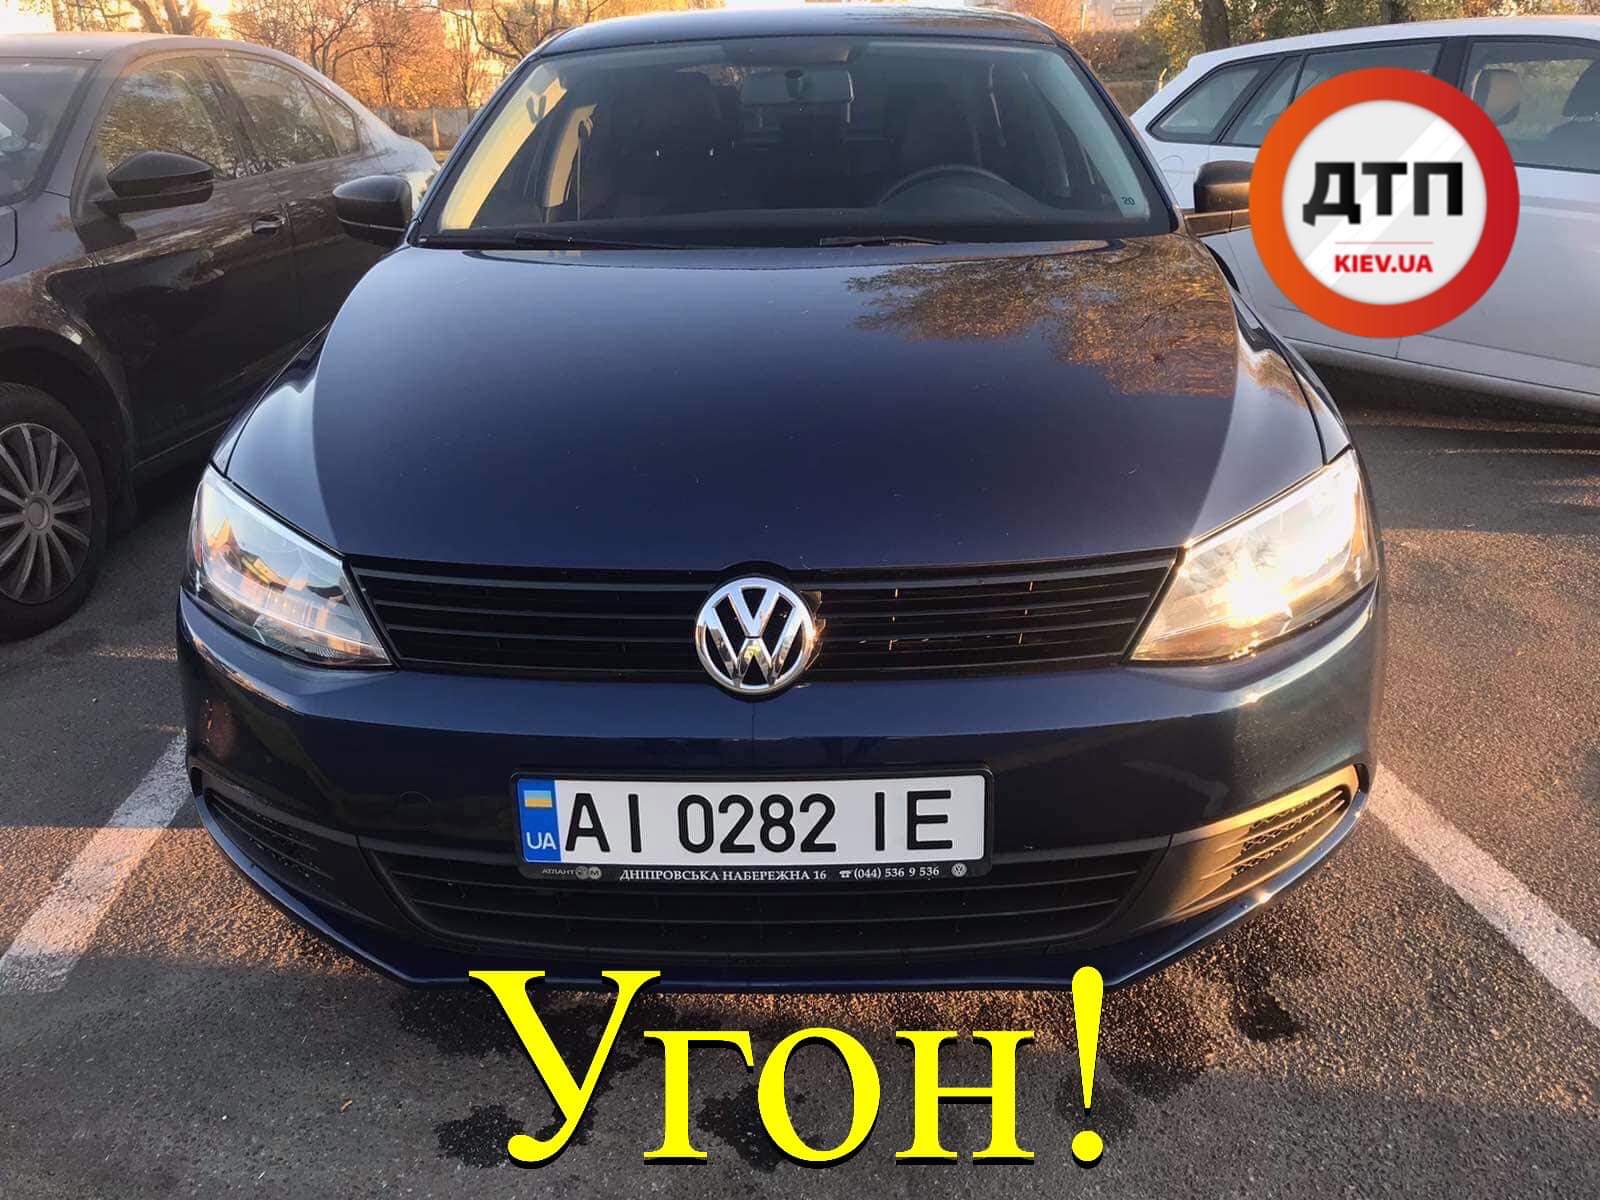 У Вишневому розшукують викрадений автомобіль Volkswagen Jetta 2013 AI0282IE